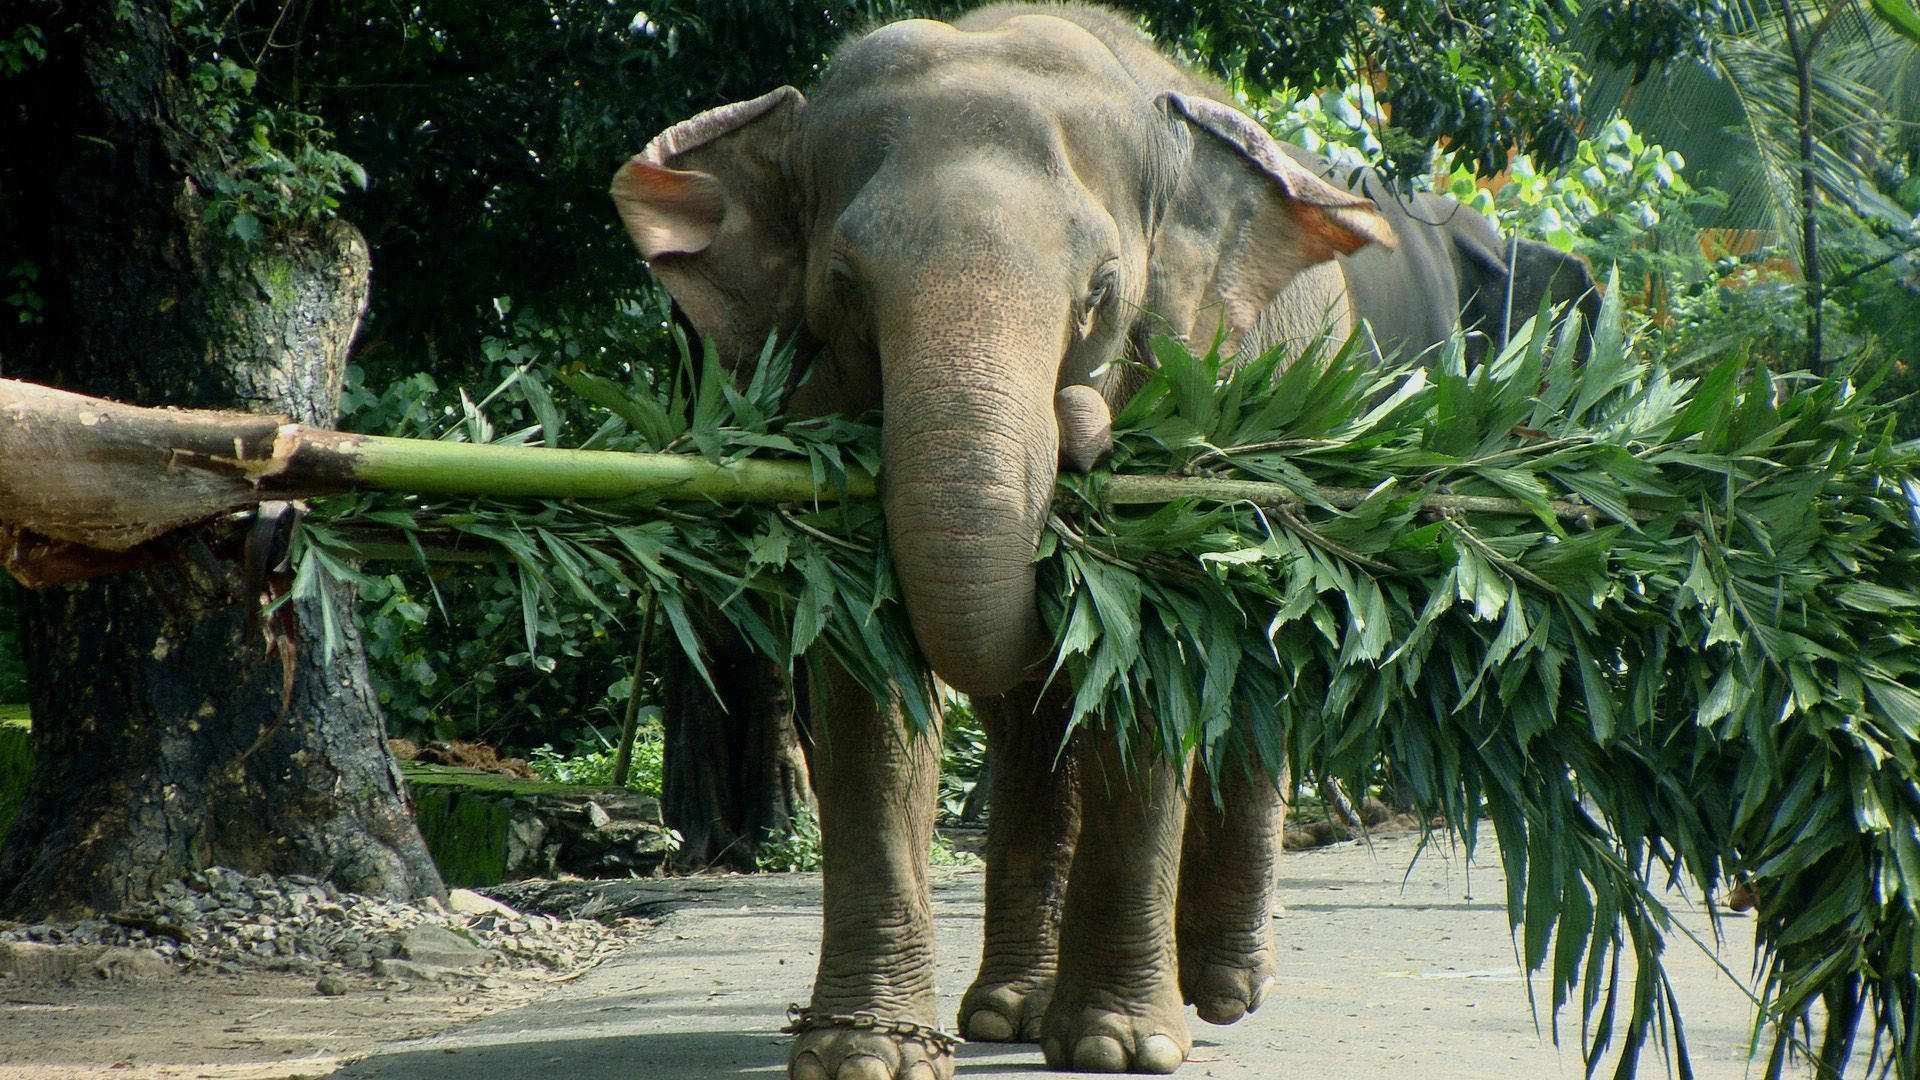 Et majestætisk elefant nyder en dag i solen. Wallpaper